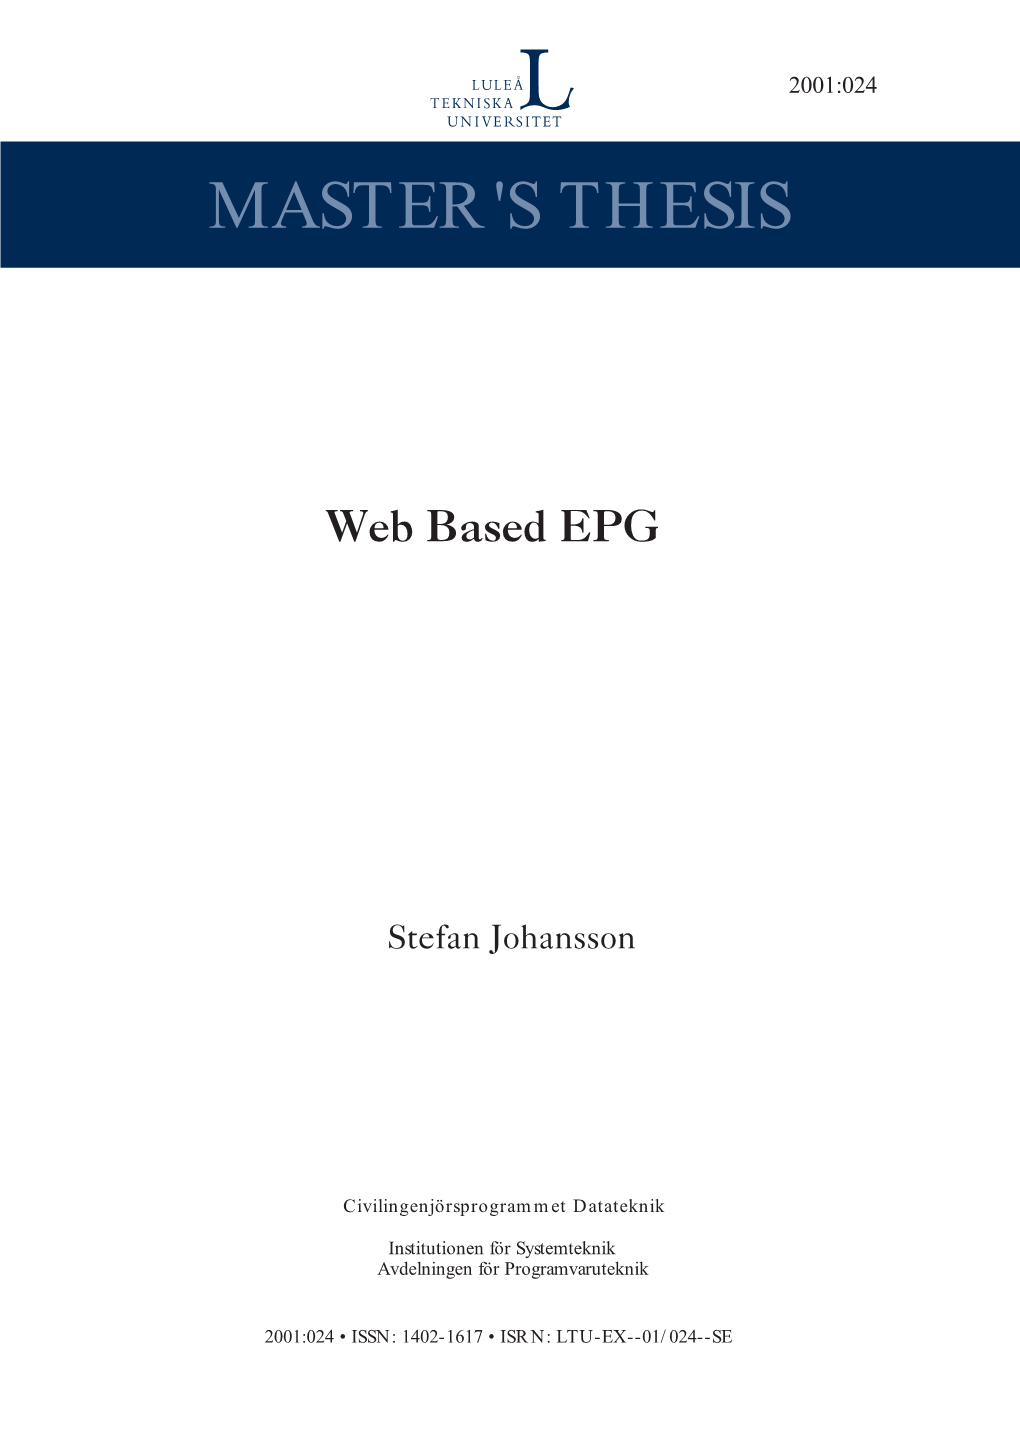 Web Based EPG